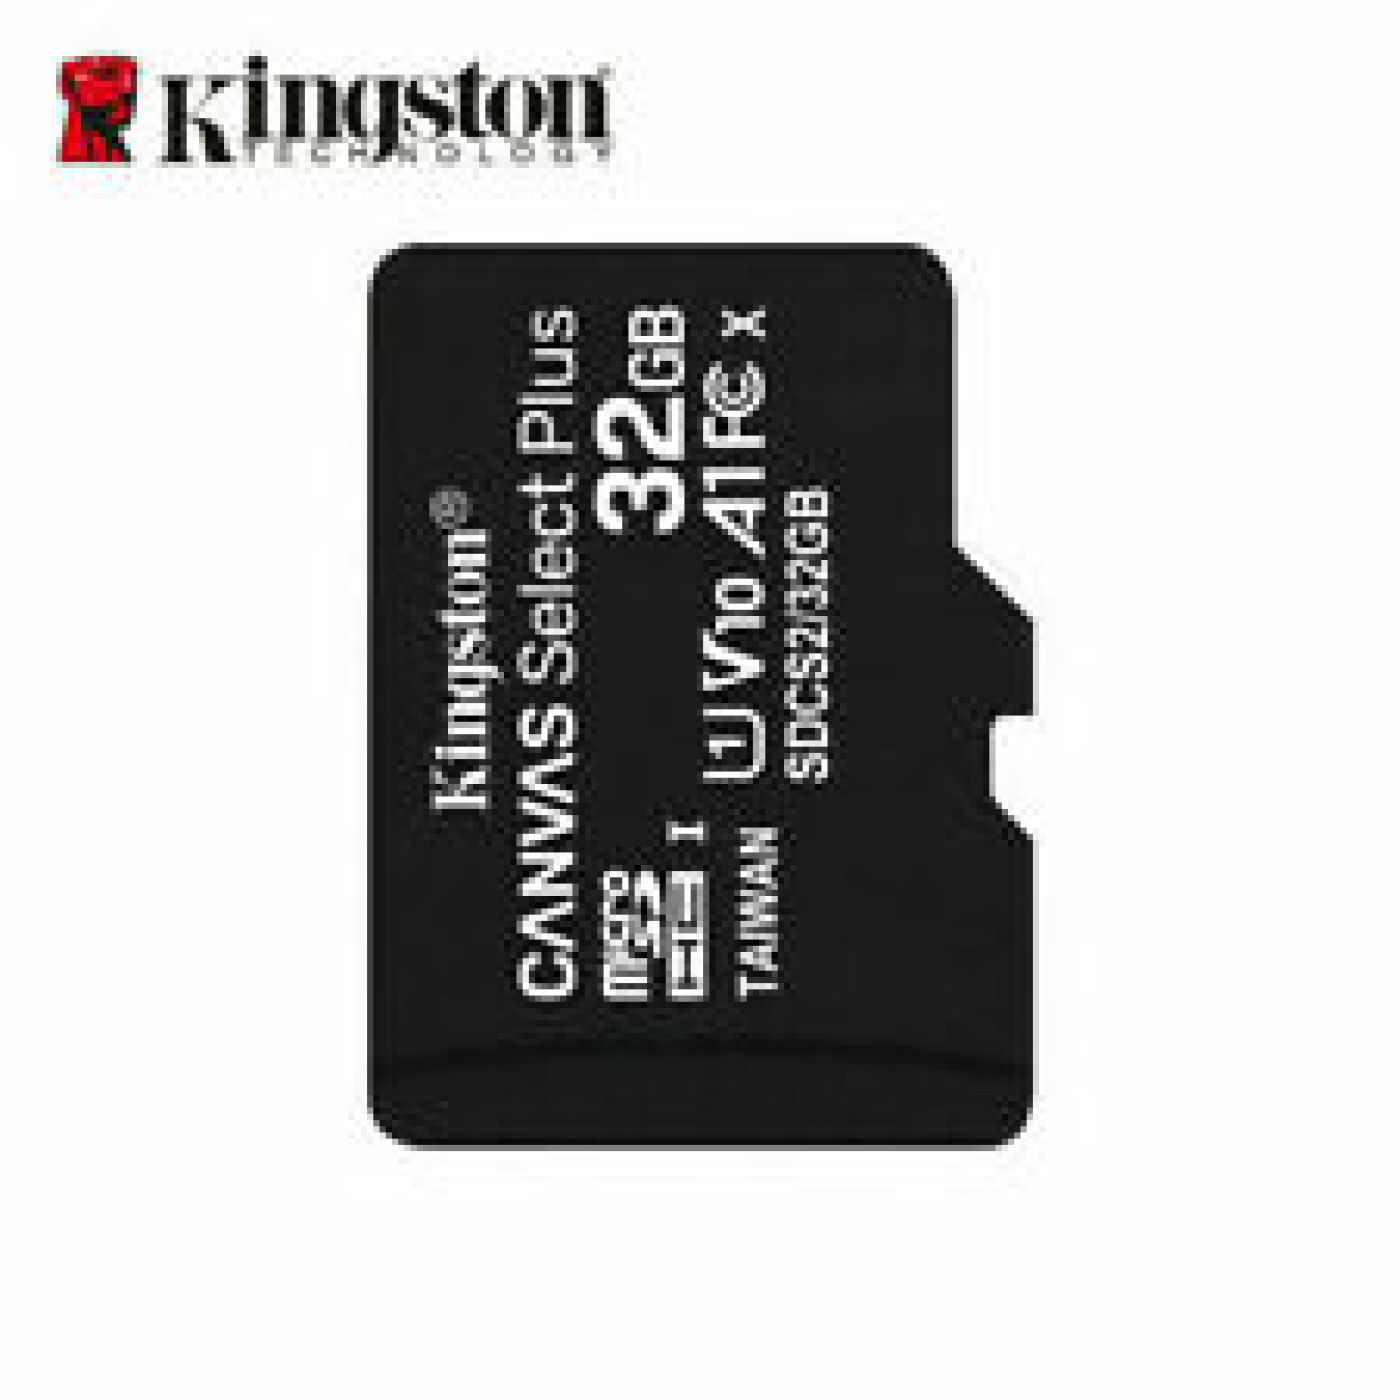 Thẻ nhớ 32GB Kingston microSDHC A1 V10 Canvas Select Plus Class10 tốc độ cao 100MB/s